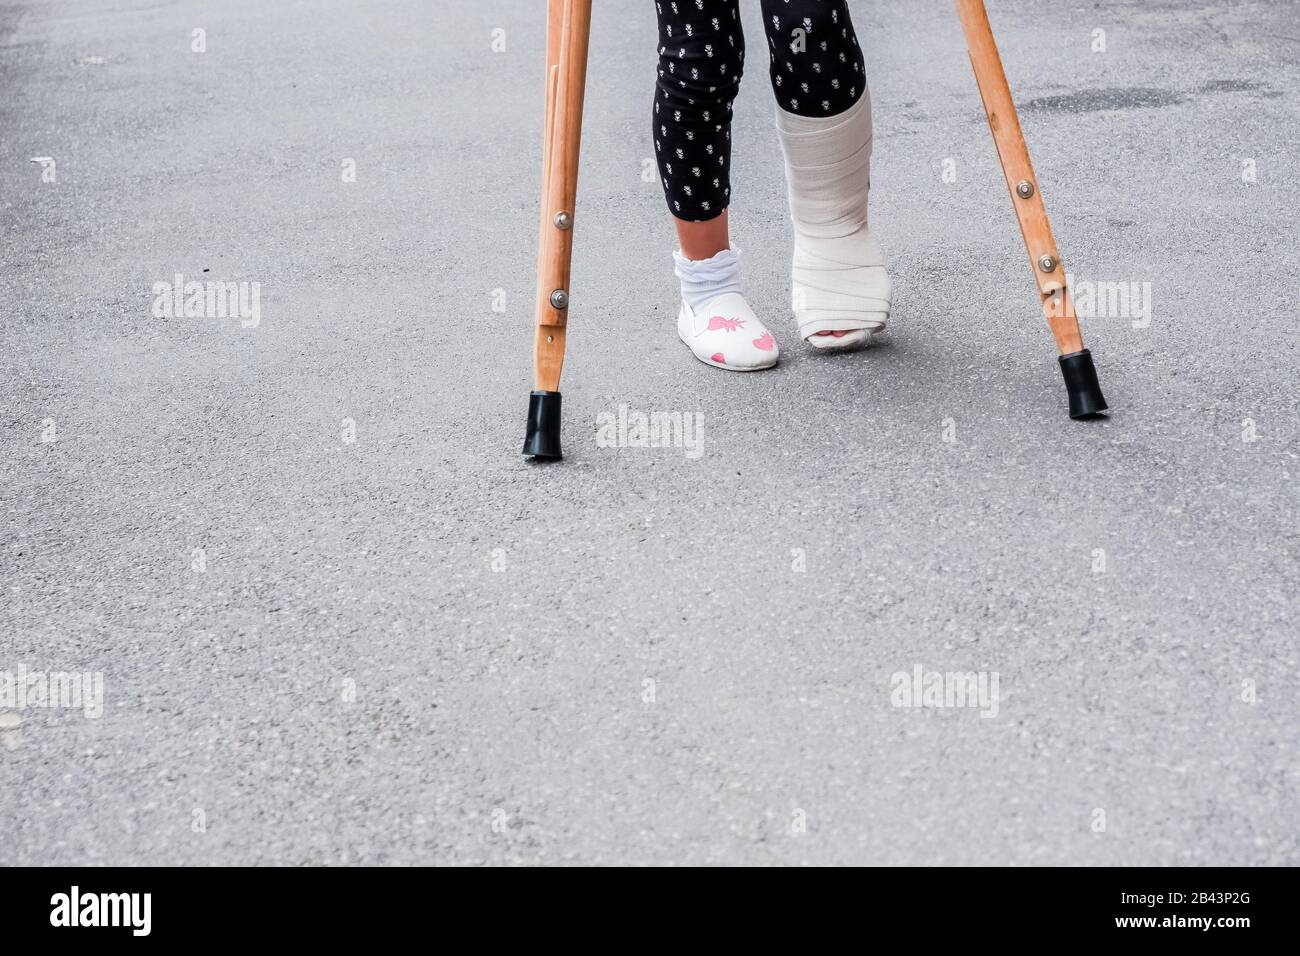 Enfant utilisant des béquilles et des jambes cassées pour marcher à l'extérieur, gros plan. Jambe cassée, béquilles en bois, blessure à la cheville. Fracture osseuse et fracture de la cheville BEI Banque D'Images